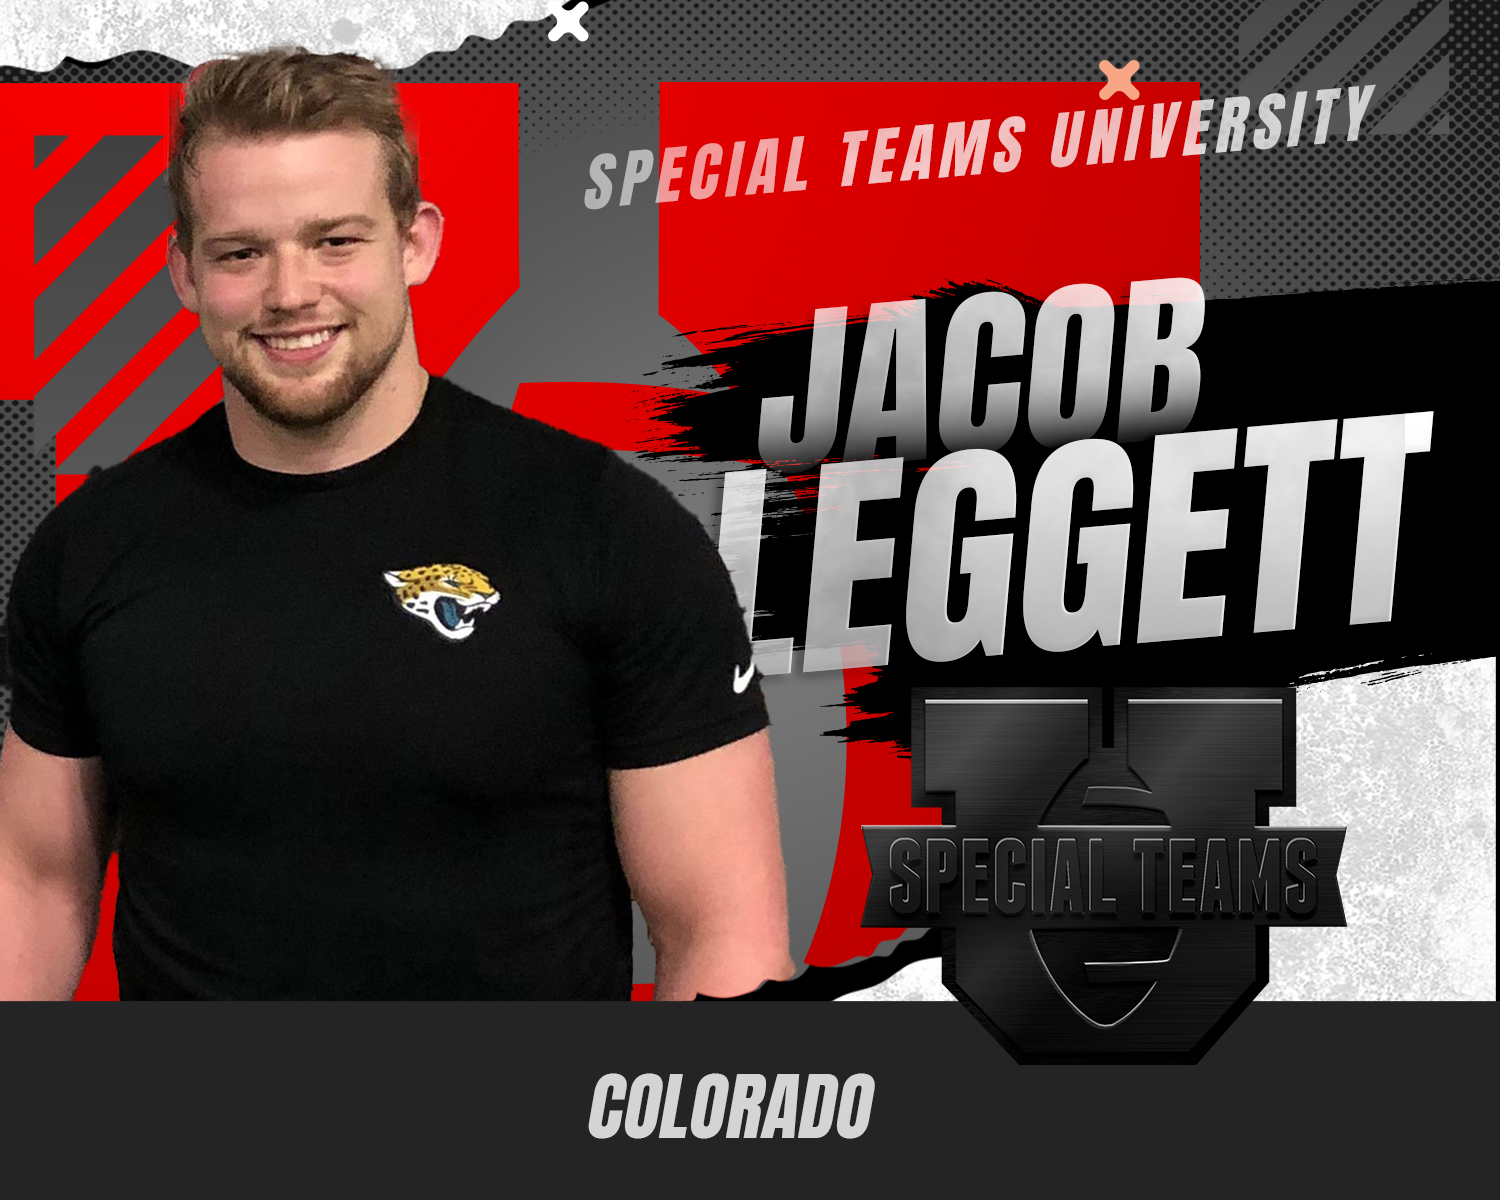 Colorado, Jacob Leggett, Long Snapping Coach